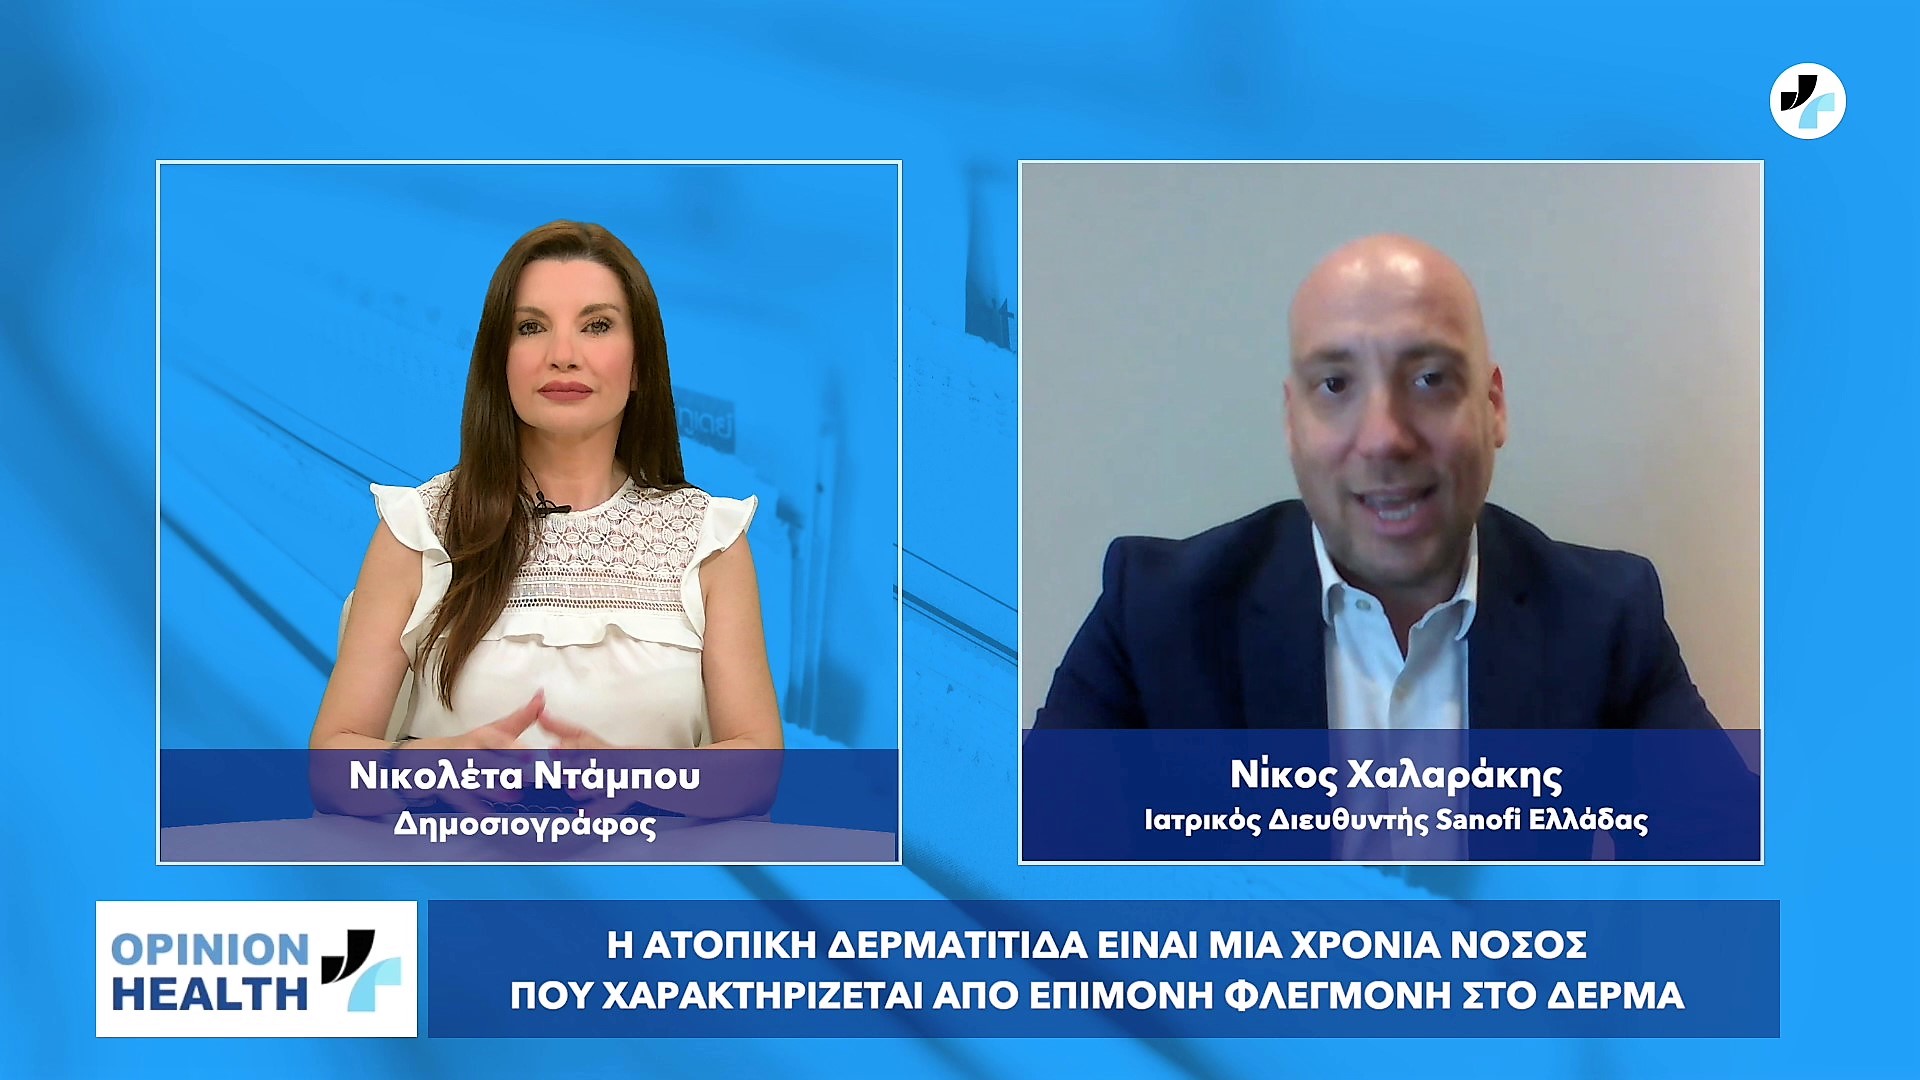 Νίκος Χαλαράκης στο healthweb: Η Ατοπική Δερματίτιδα δεν είναι ένα απλό έκζεμα αλλά μια πολύπλοκη νόσος